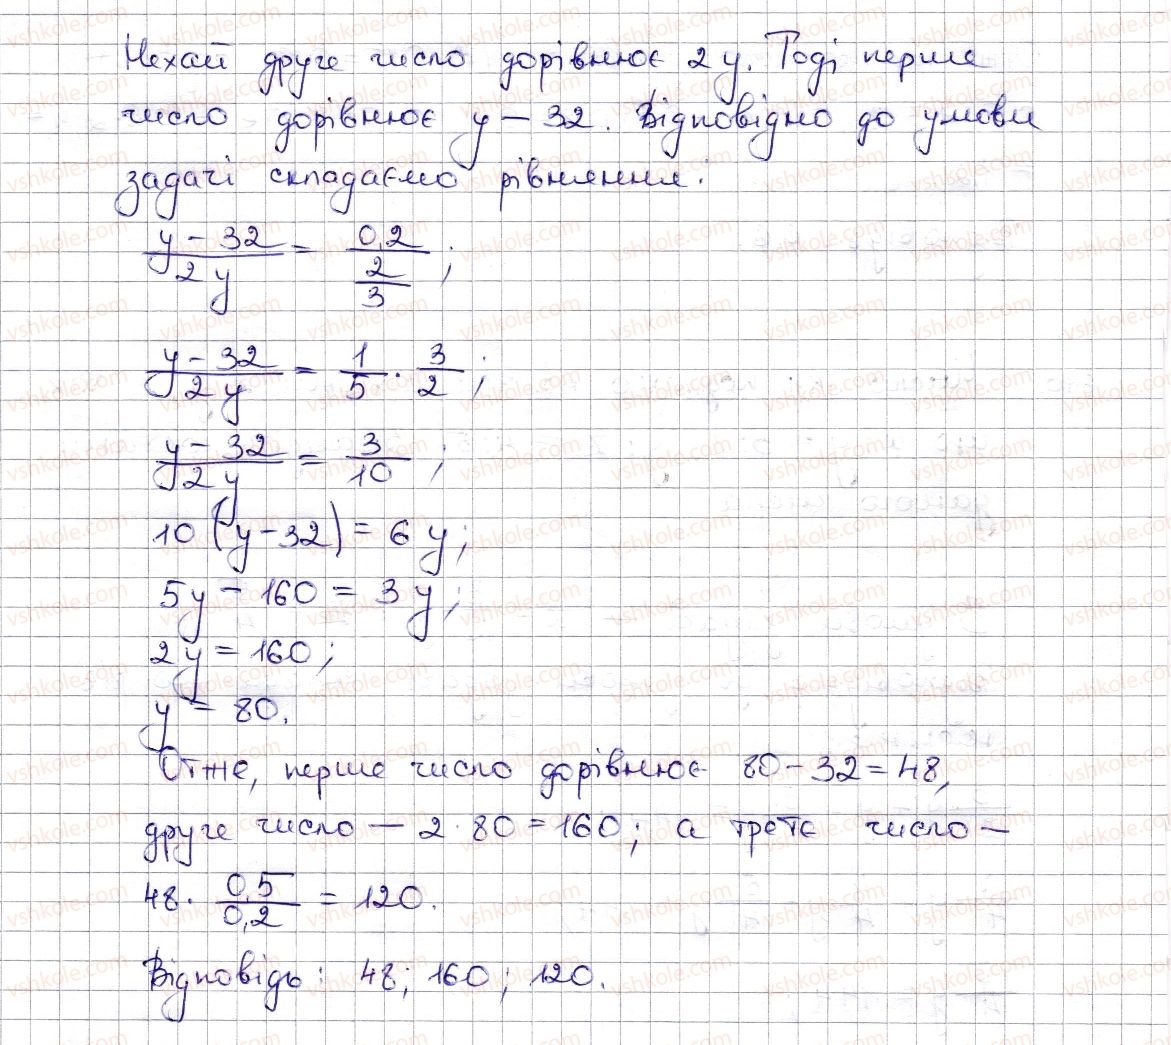 6-matematika-na-tarasenkova-im-bogatirova-om-kolomiyets-zo-serdyuk-2014--rozdil-3-vidnoshennya-i-proportsiyi-15-podil-chisla-v-danomu-vidnoshenni-masshtab-671-rnd9349.jpg